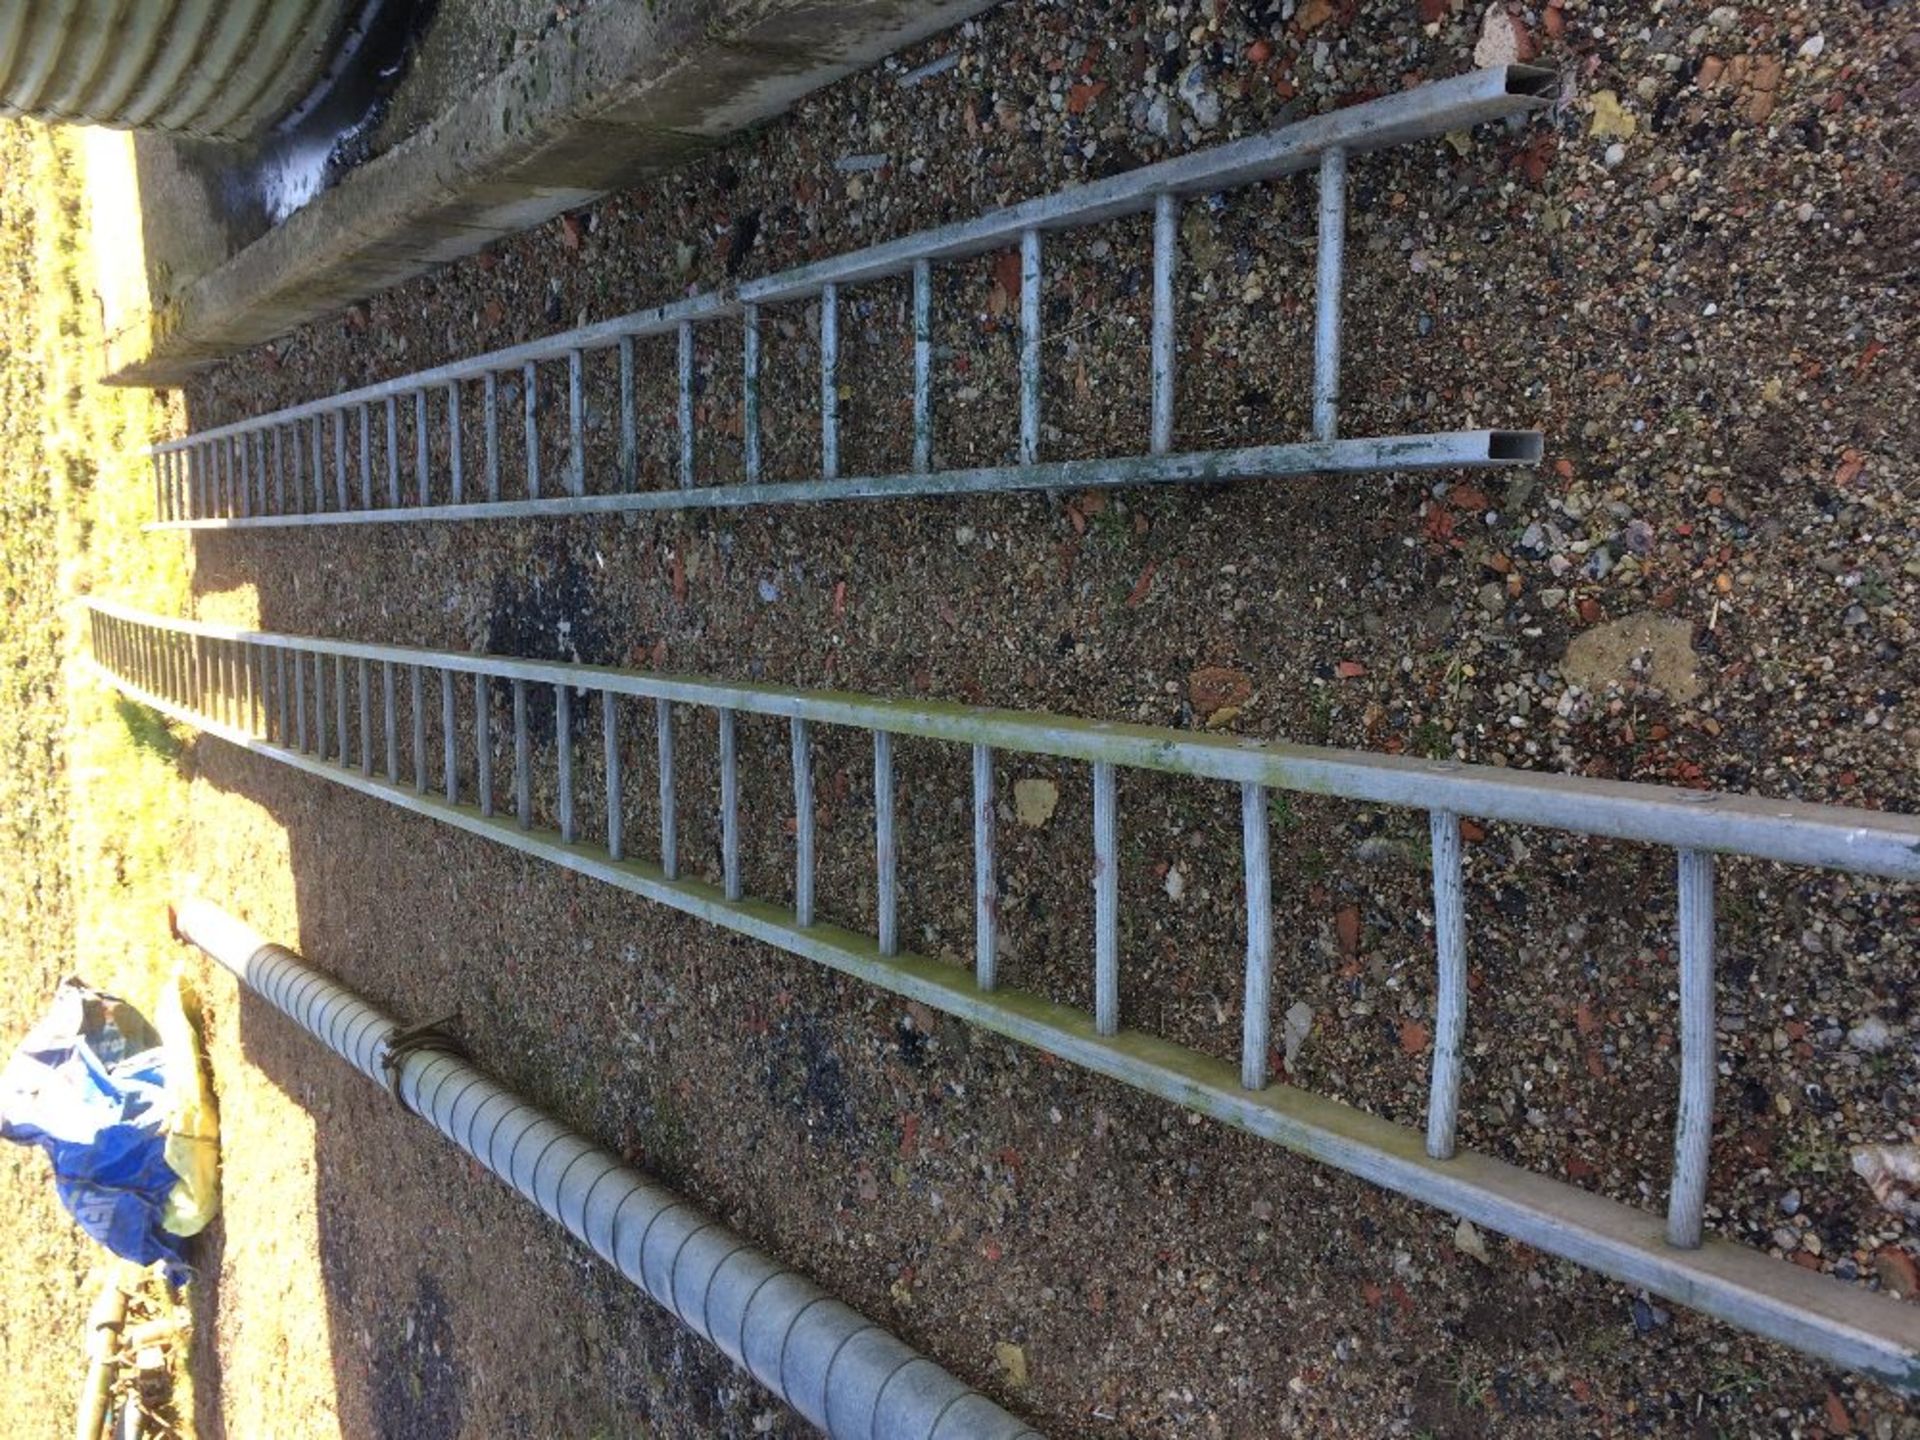 2 x Aluminium ladders. 1 approx 9m, 1 ap